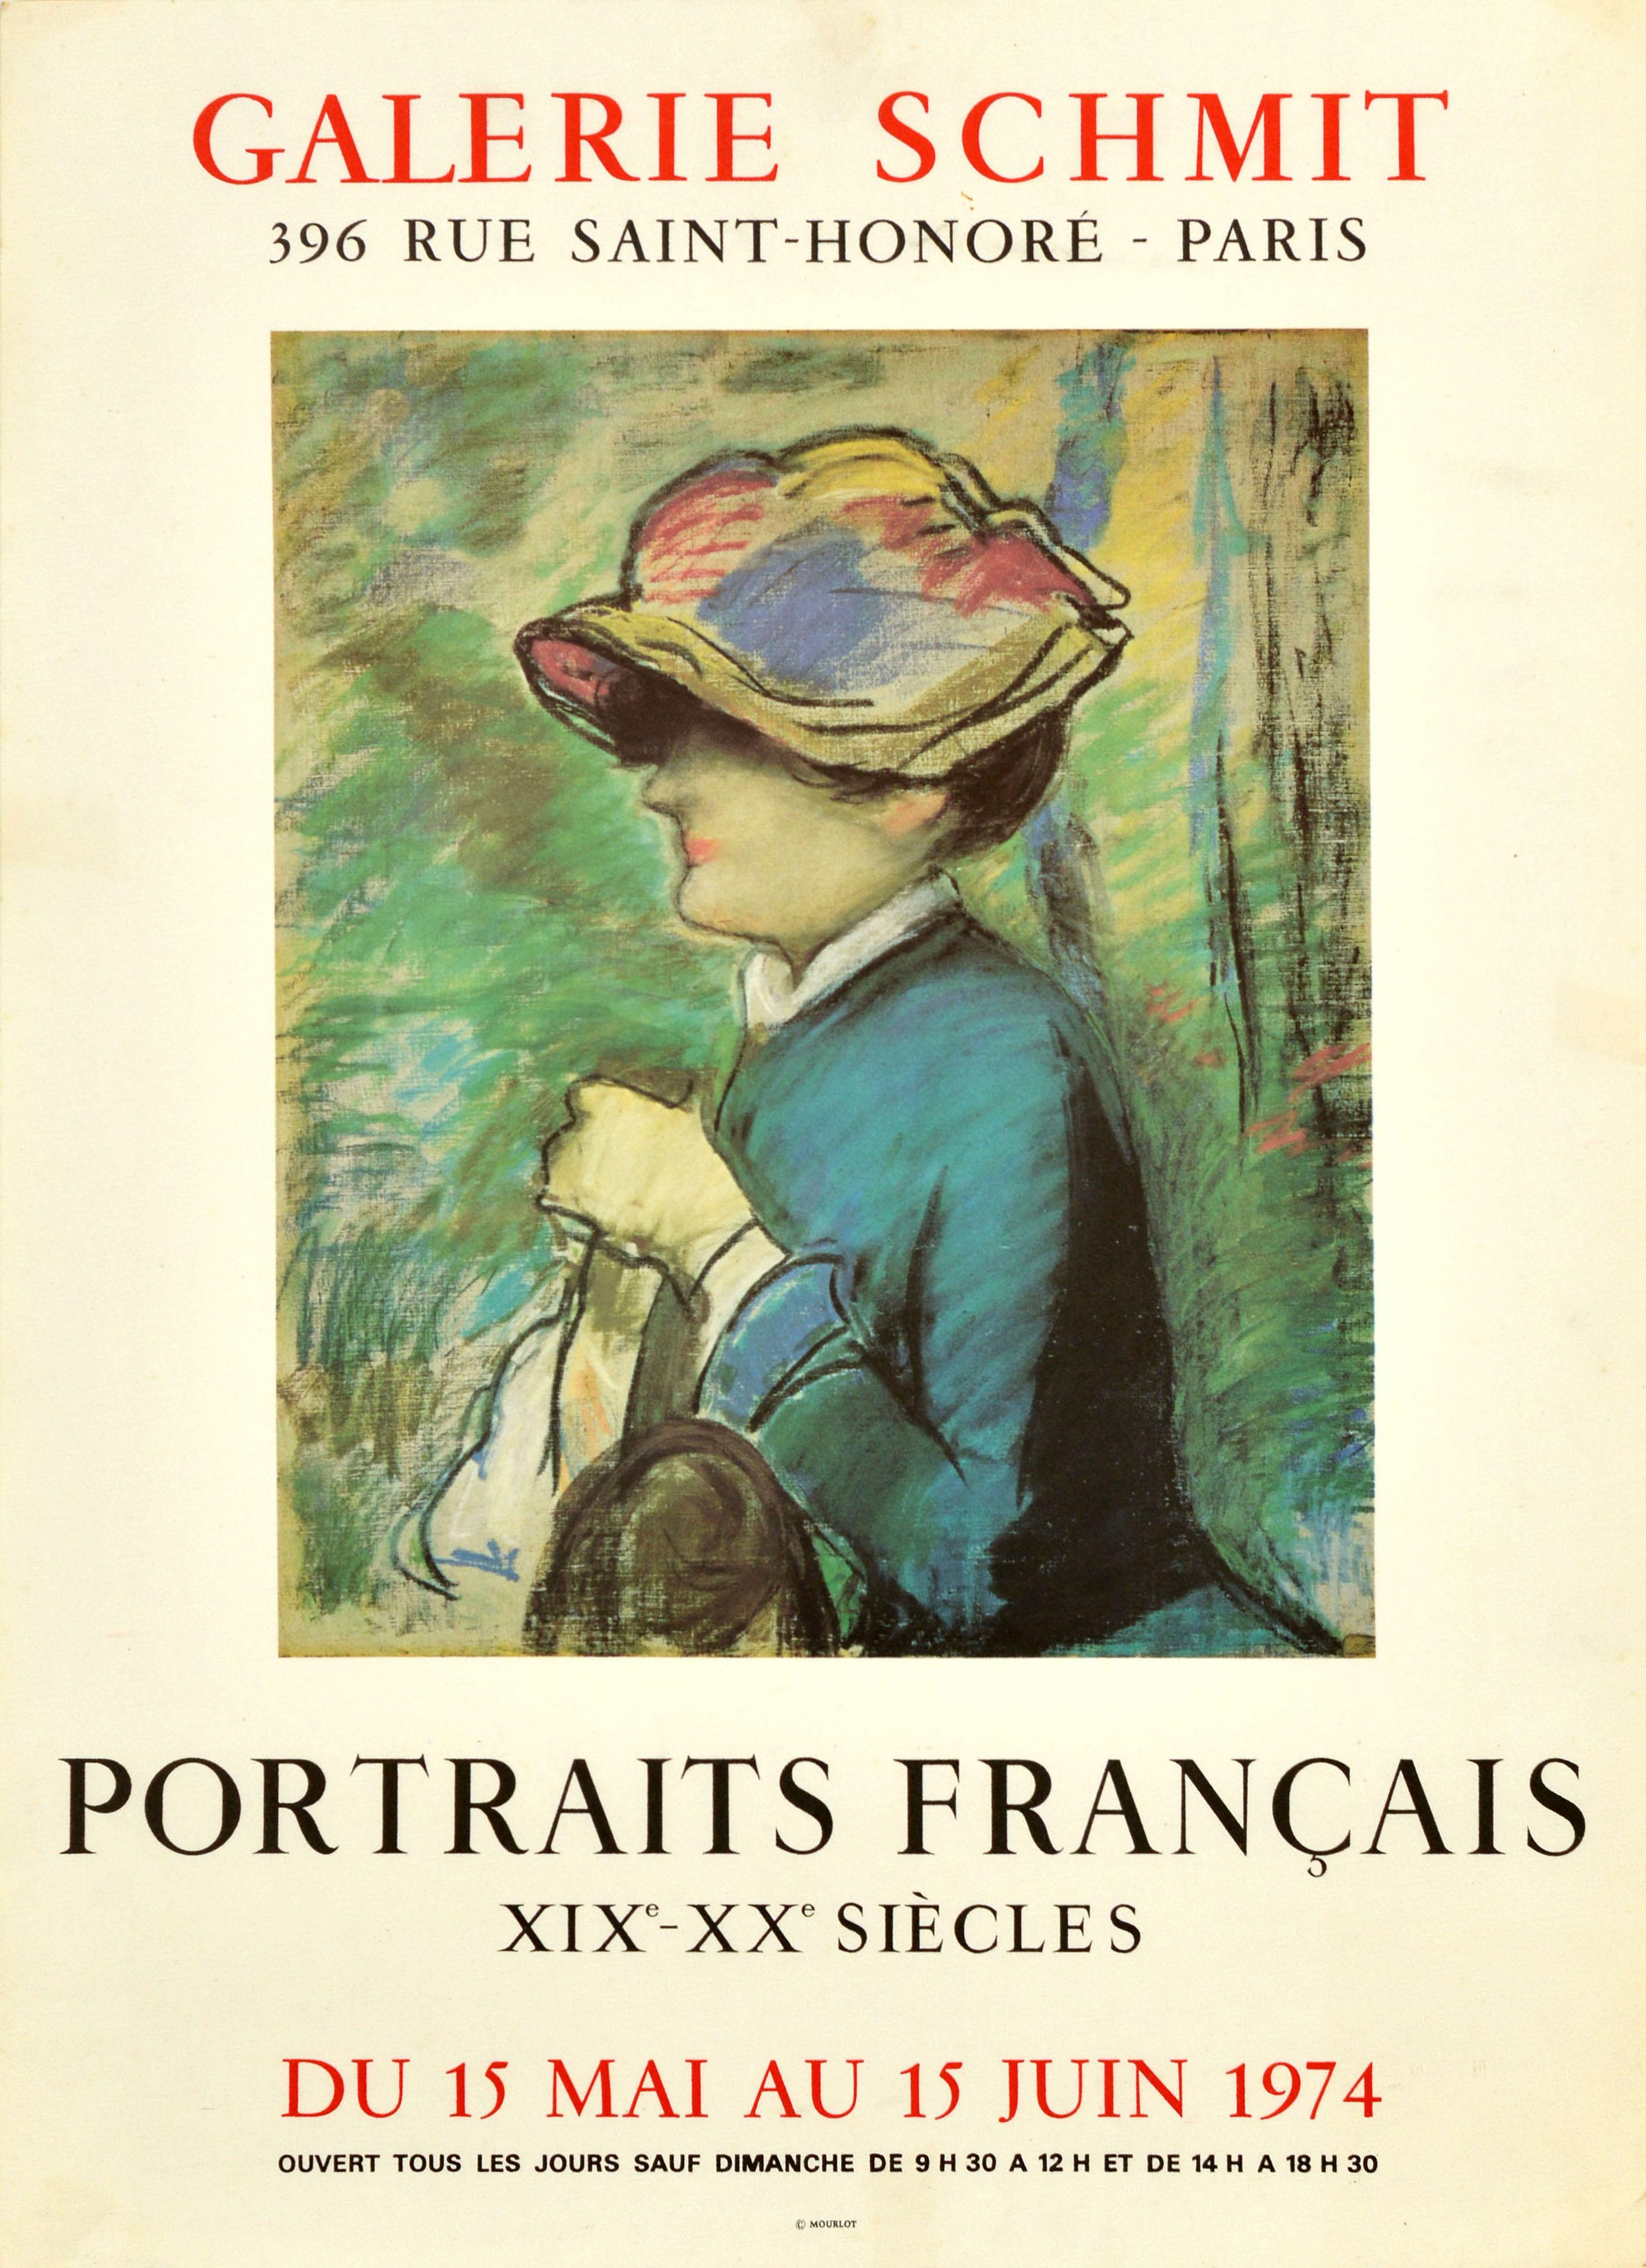 Edouard Manet Print - Original Vintage Art Exhibition Poster Portraits Francais Galerie Schmit Manet